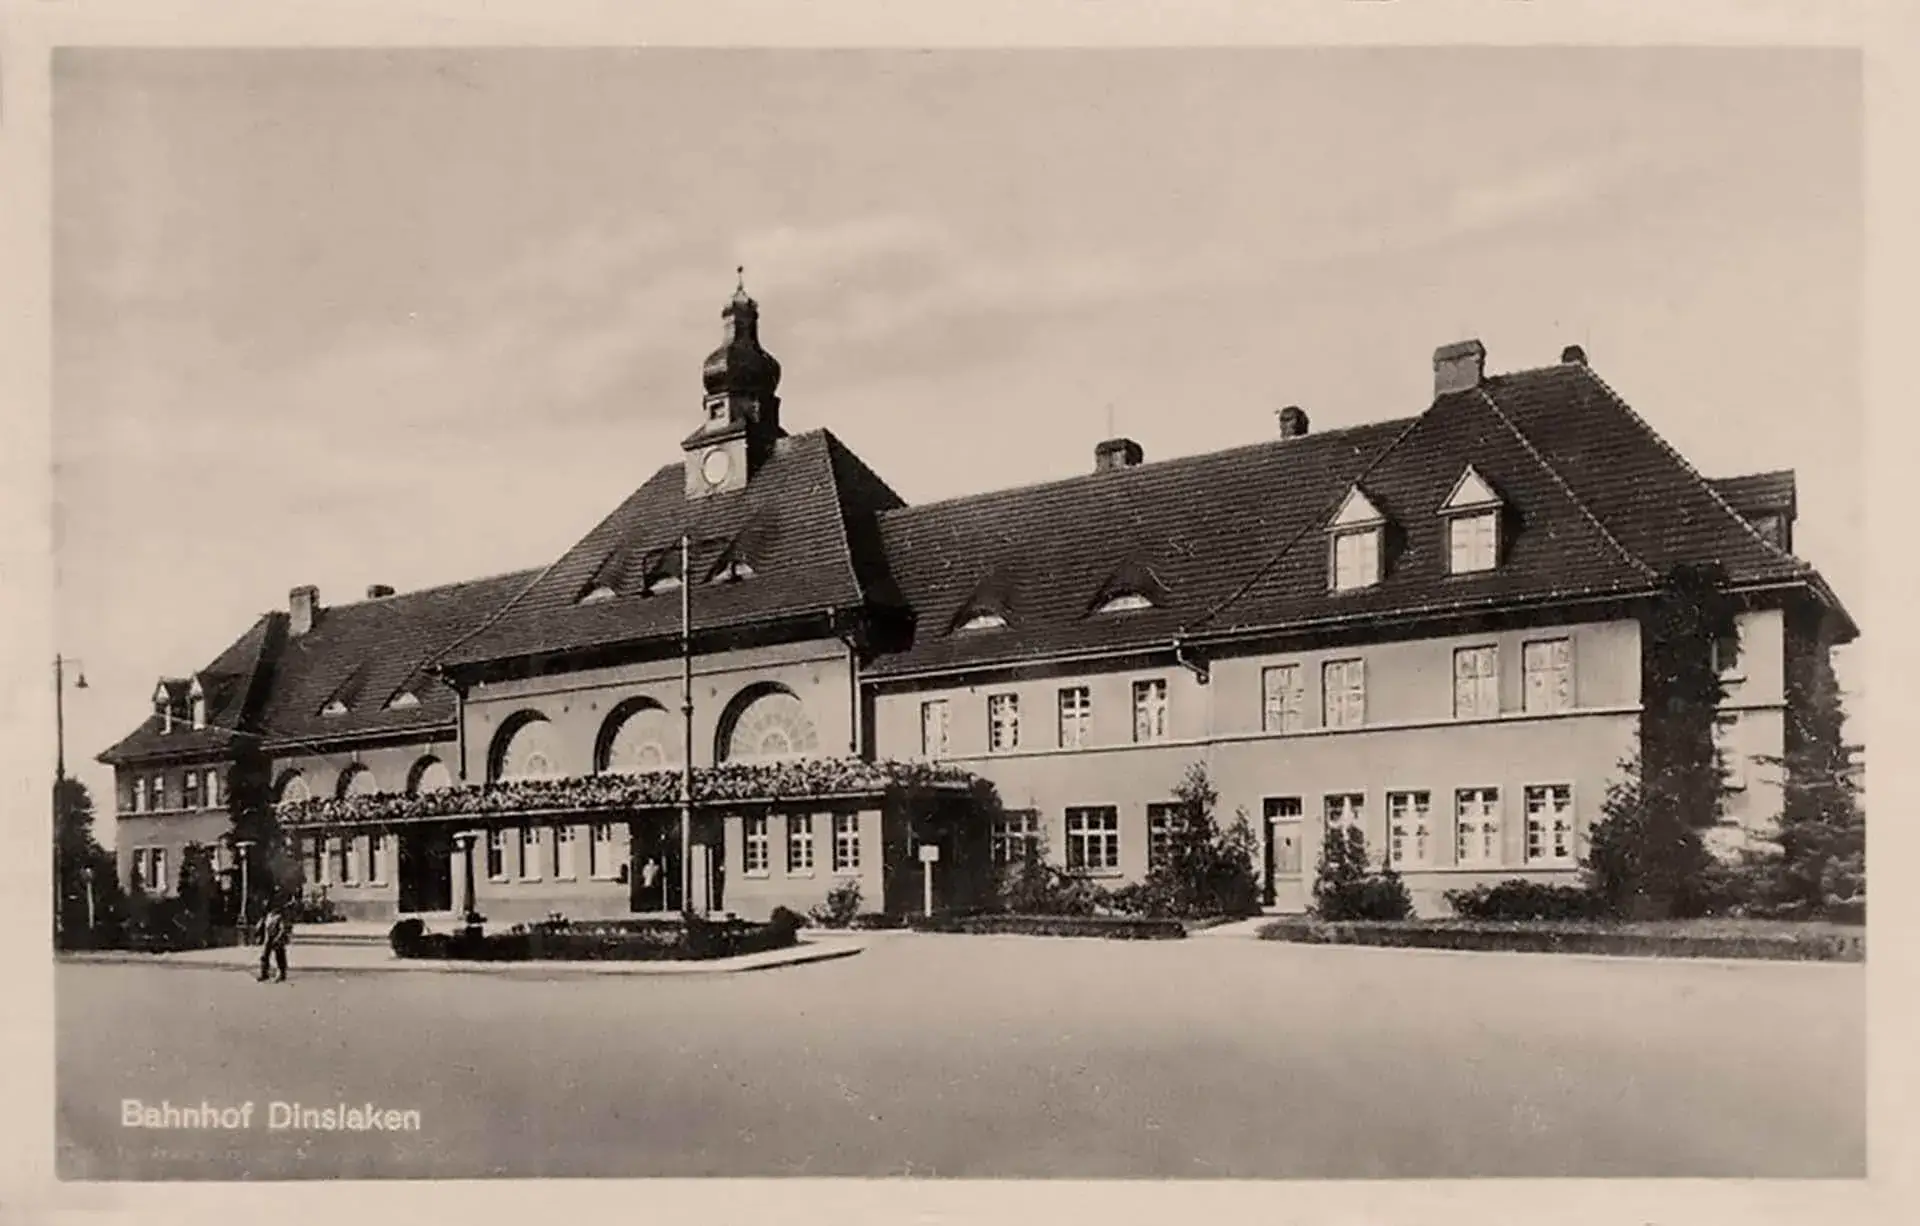 Das großzügige 2. Bahnhofgebäude in Dinslaken, das im Jahr 1916 fertiggestellt wurde.